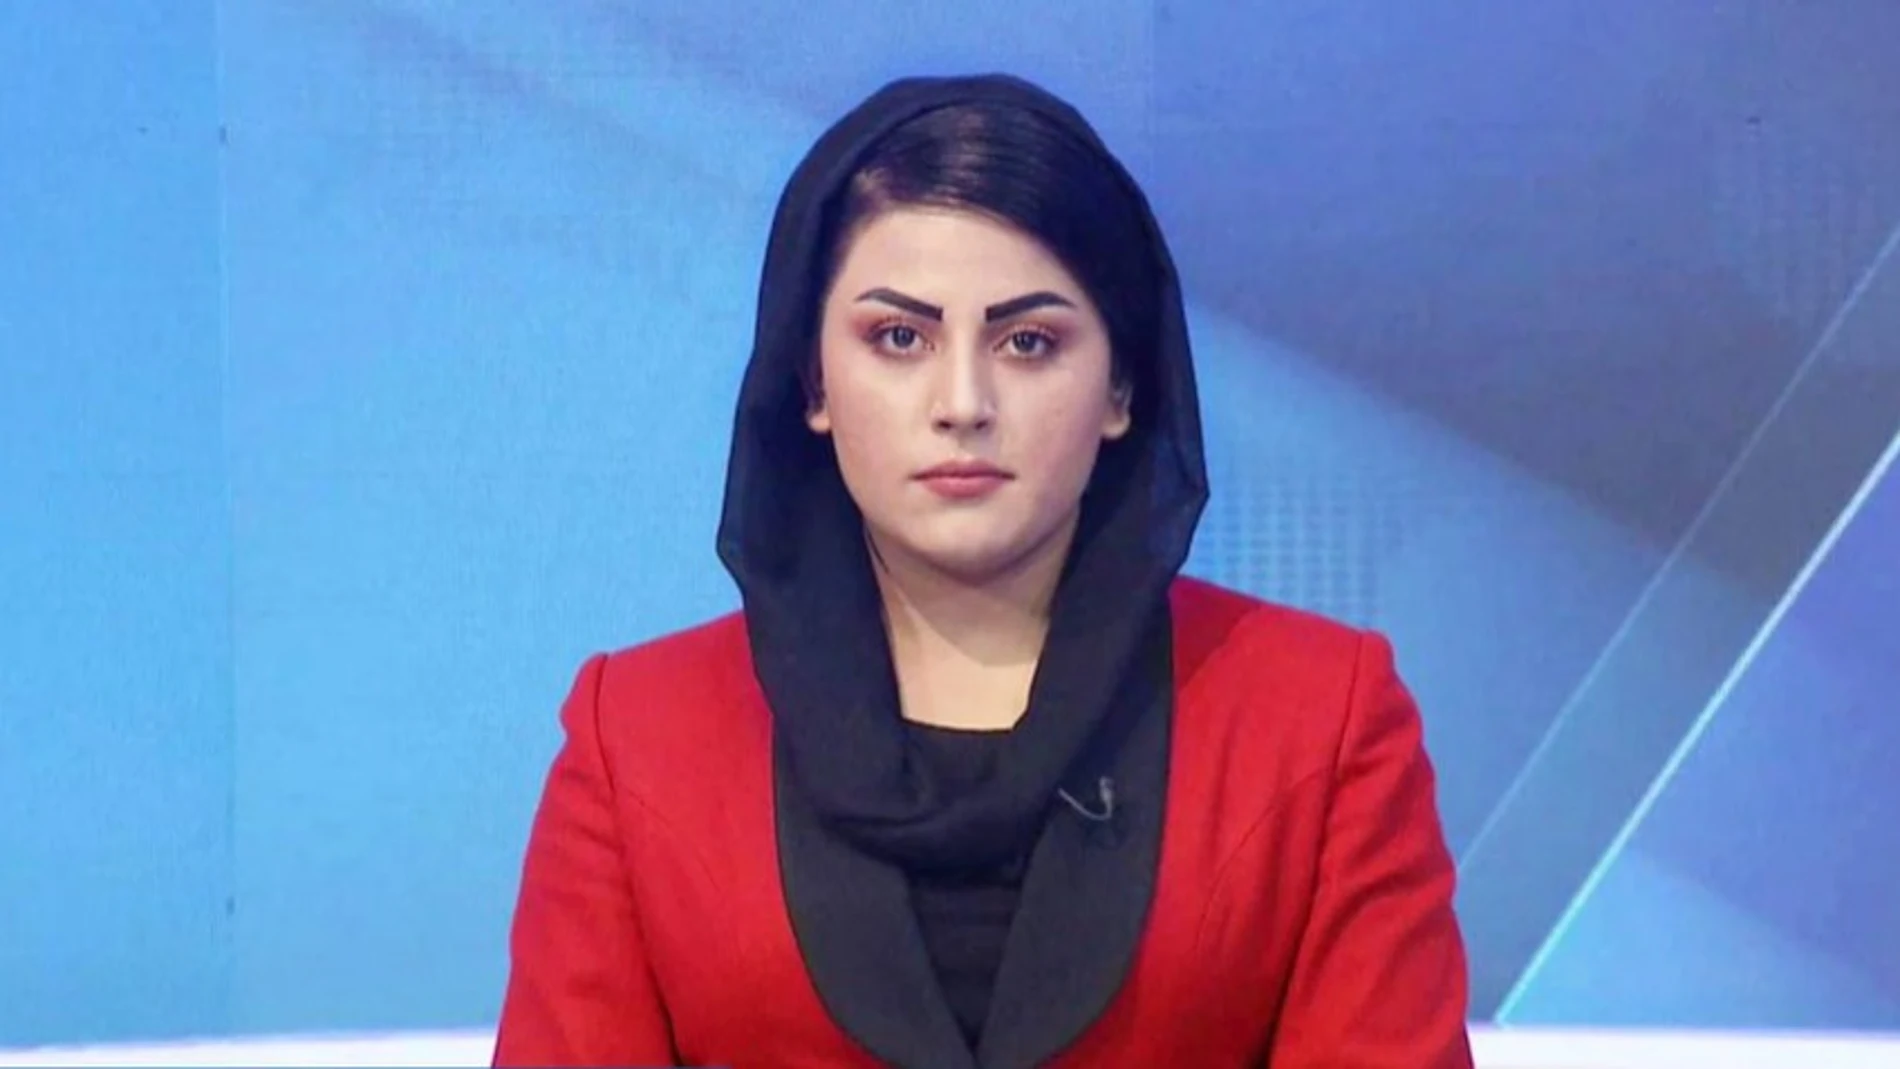 La presentadora Shabnam Dawran declaró en un vídeo compartido en Twitter que la rechazaron de su trabajo en la Radio Televisión Afgana